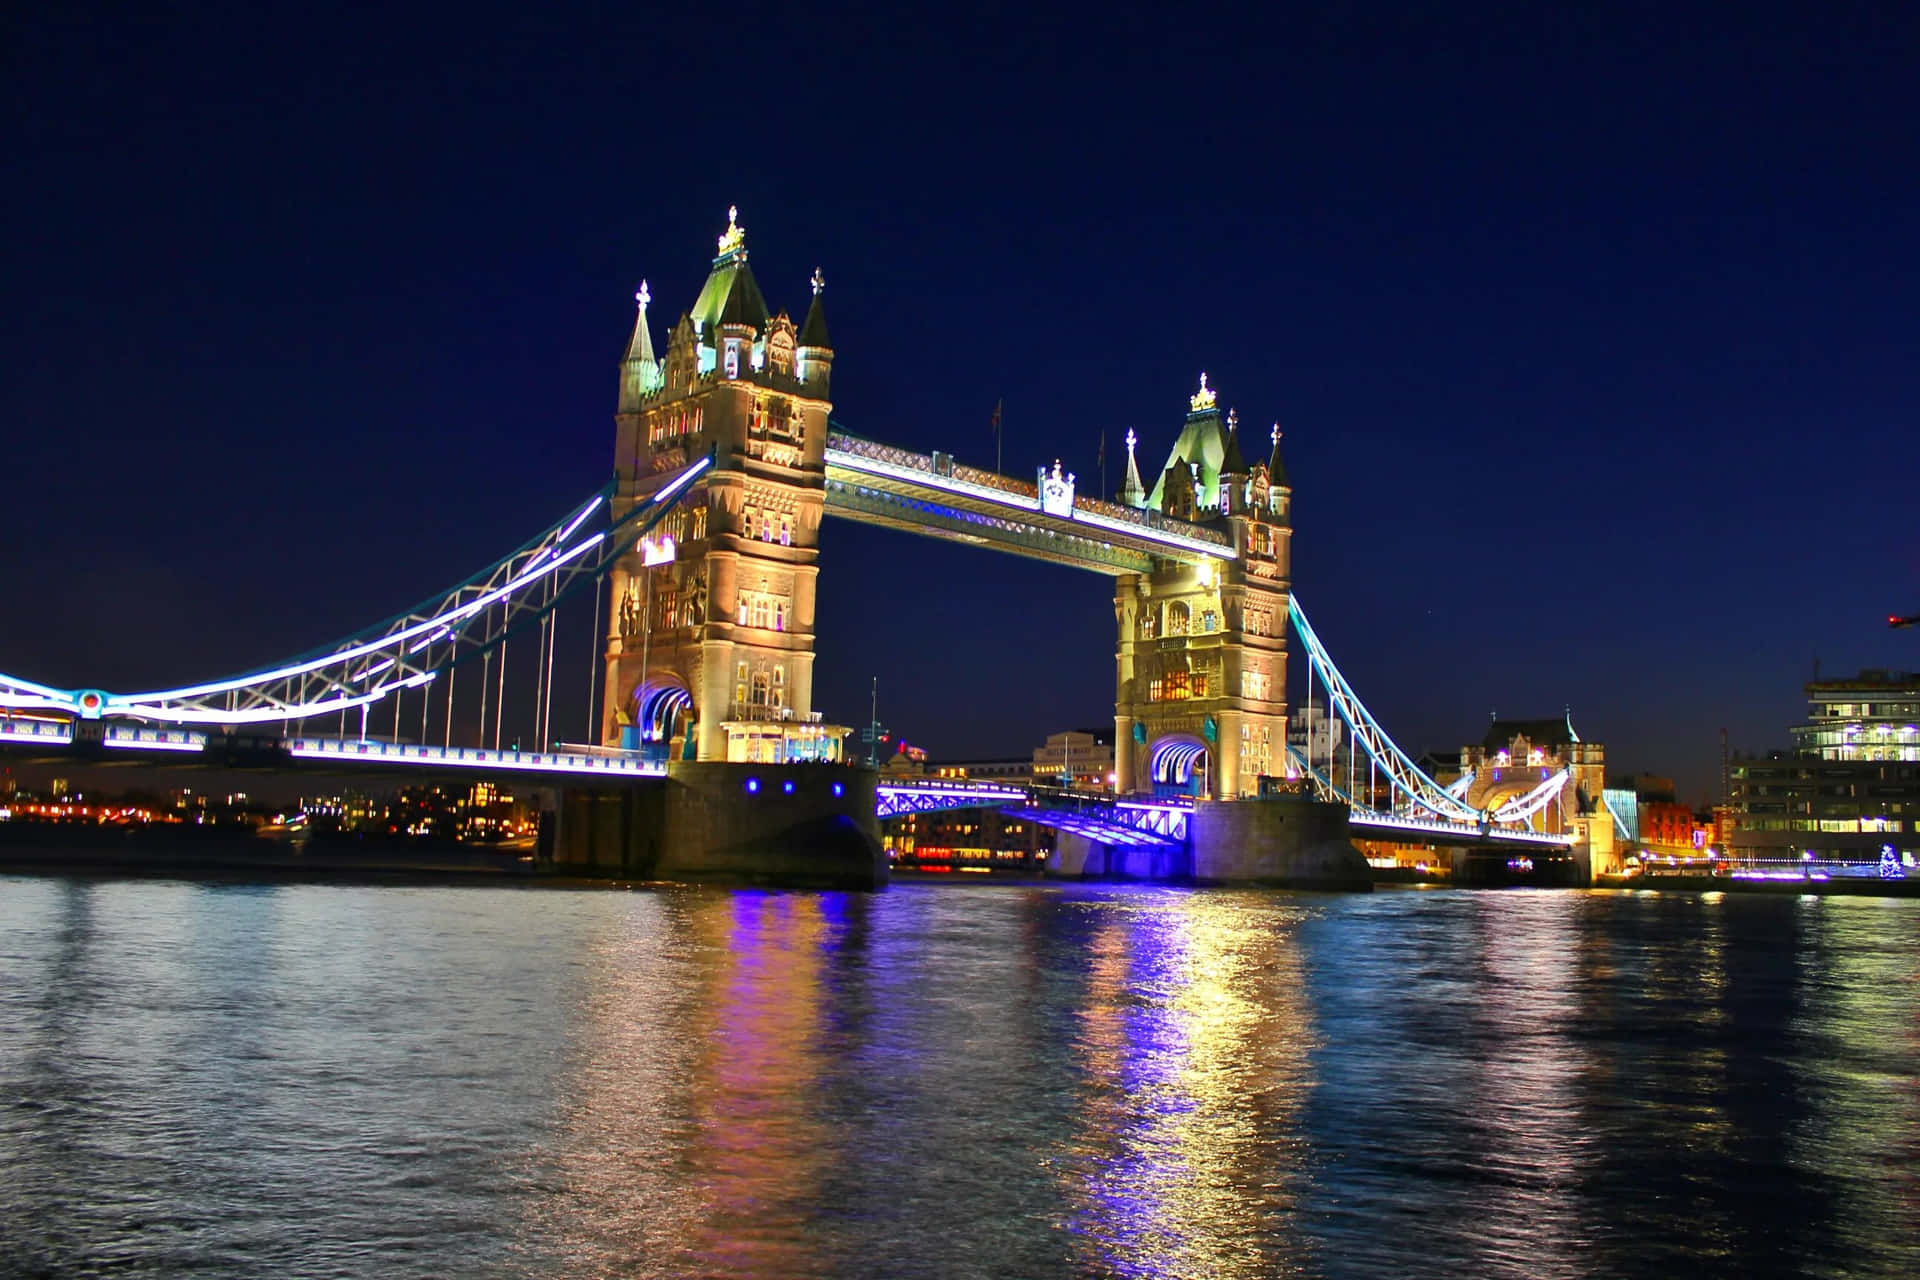 Dieikonische Tower Bridge In London